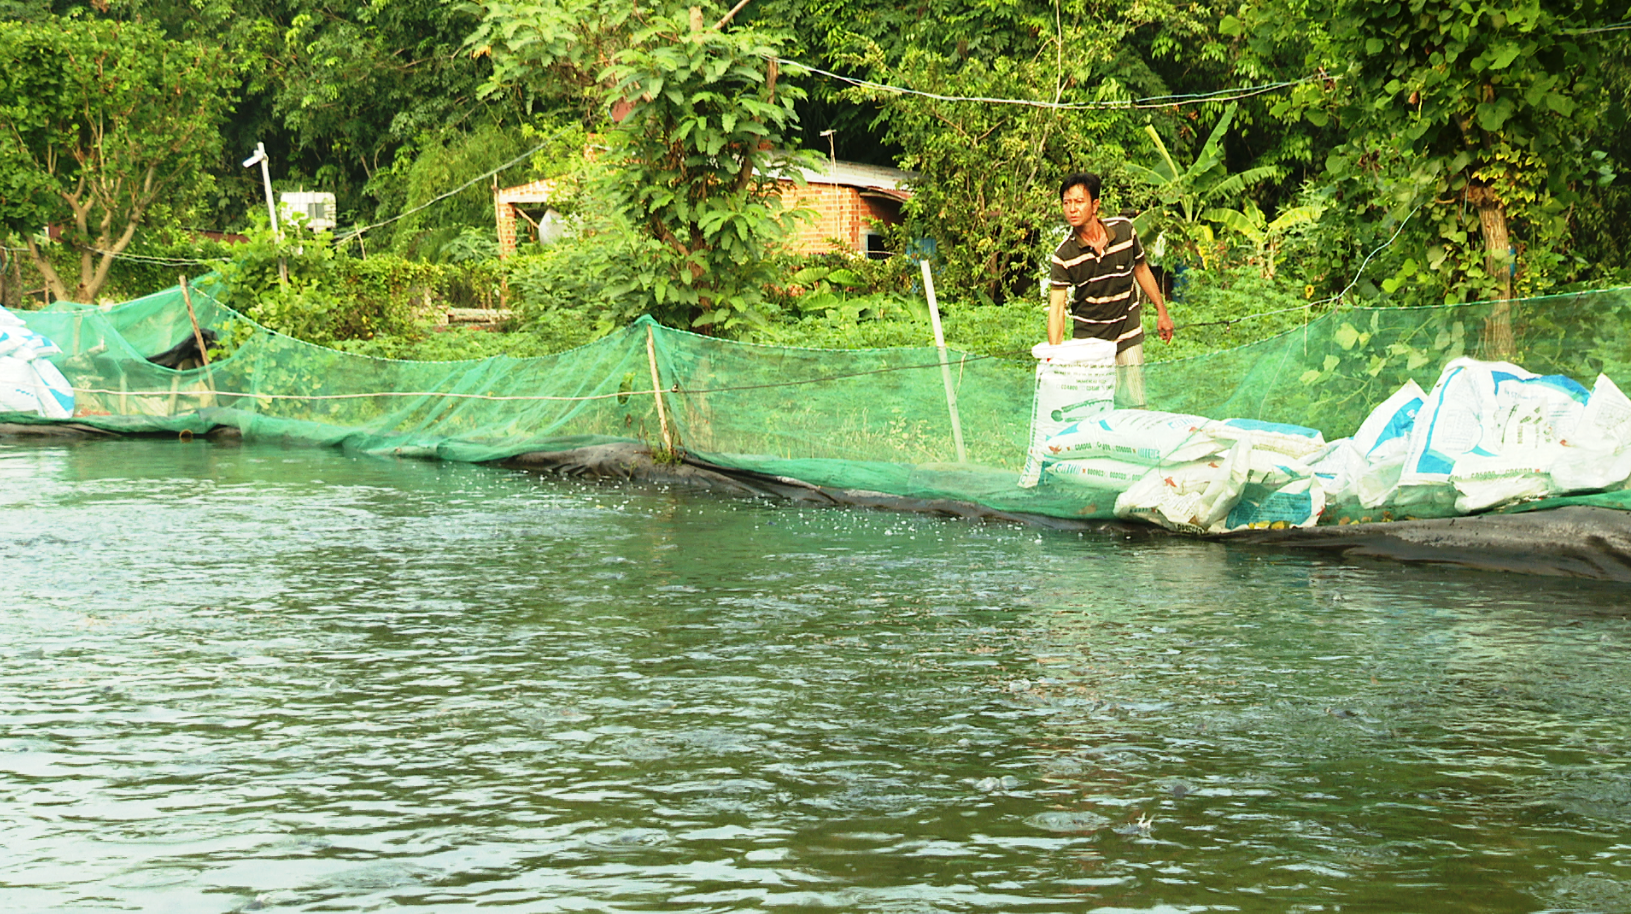 Tây Ninh: Giá cá lóc đen bật tăng, dân nuôi cá thở phào chuyển từ lỗ thành lãi - Ảnh 1.